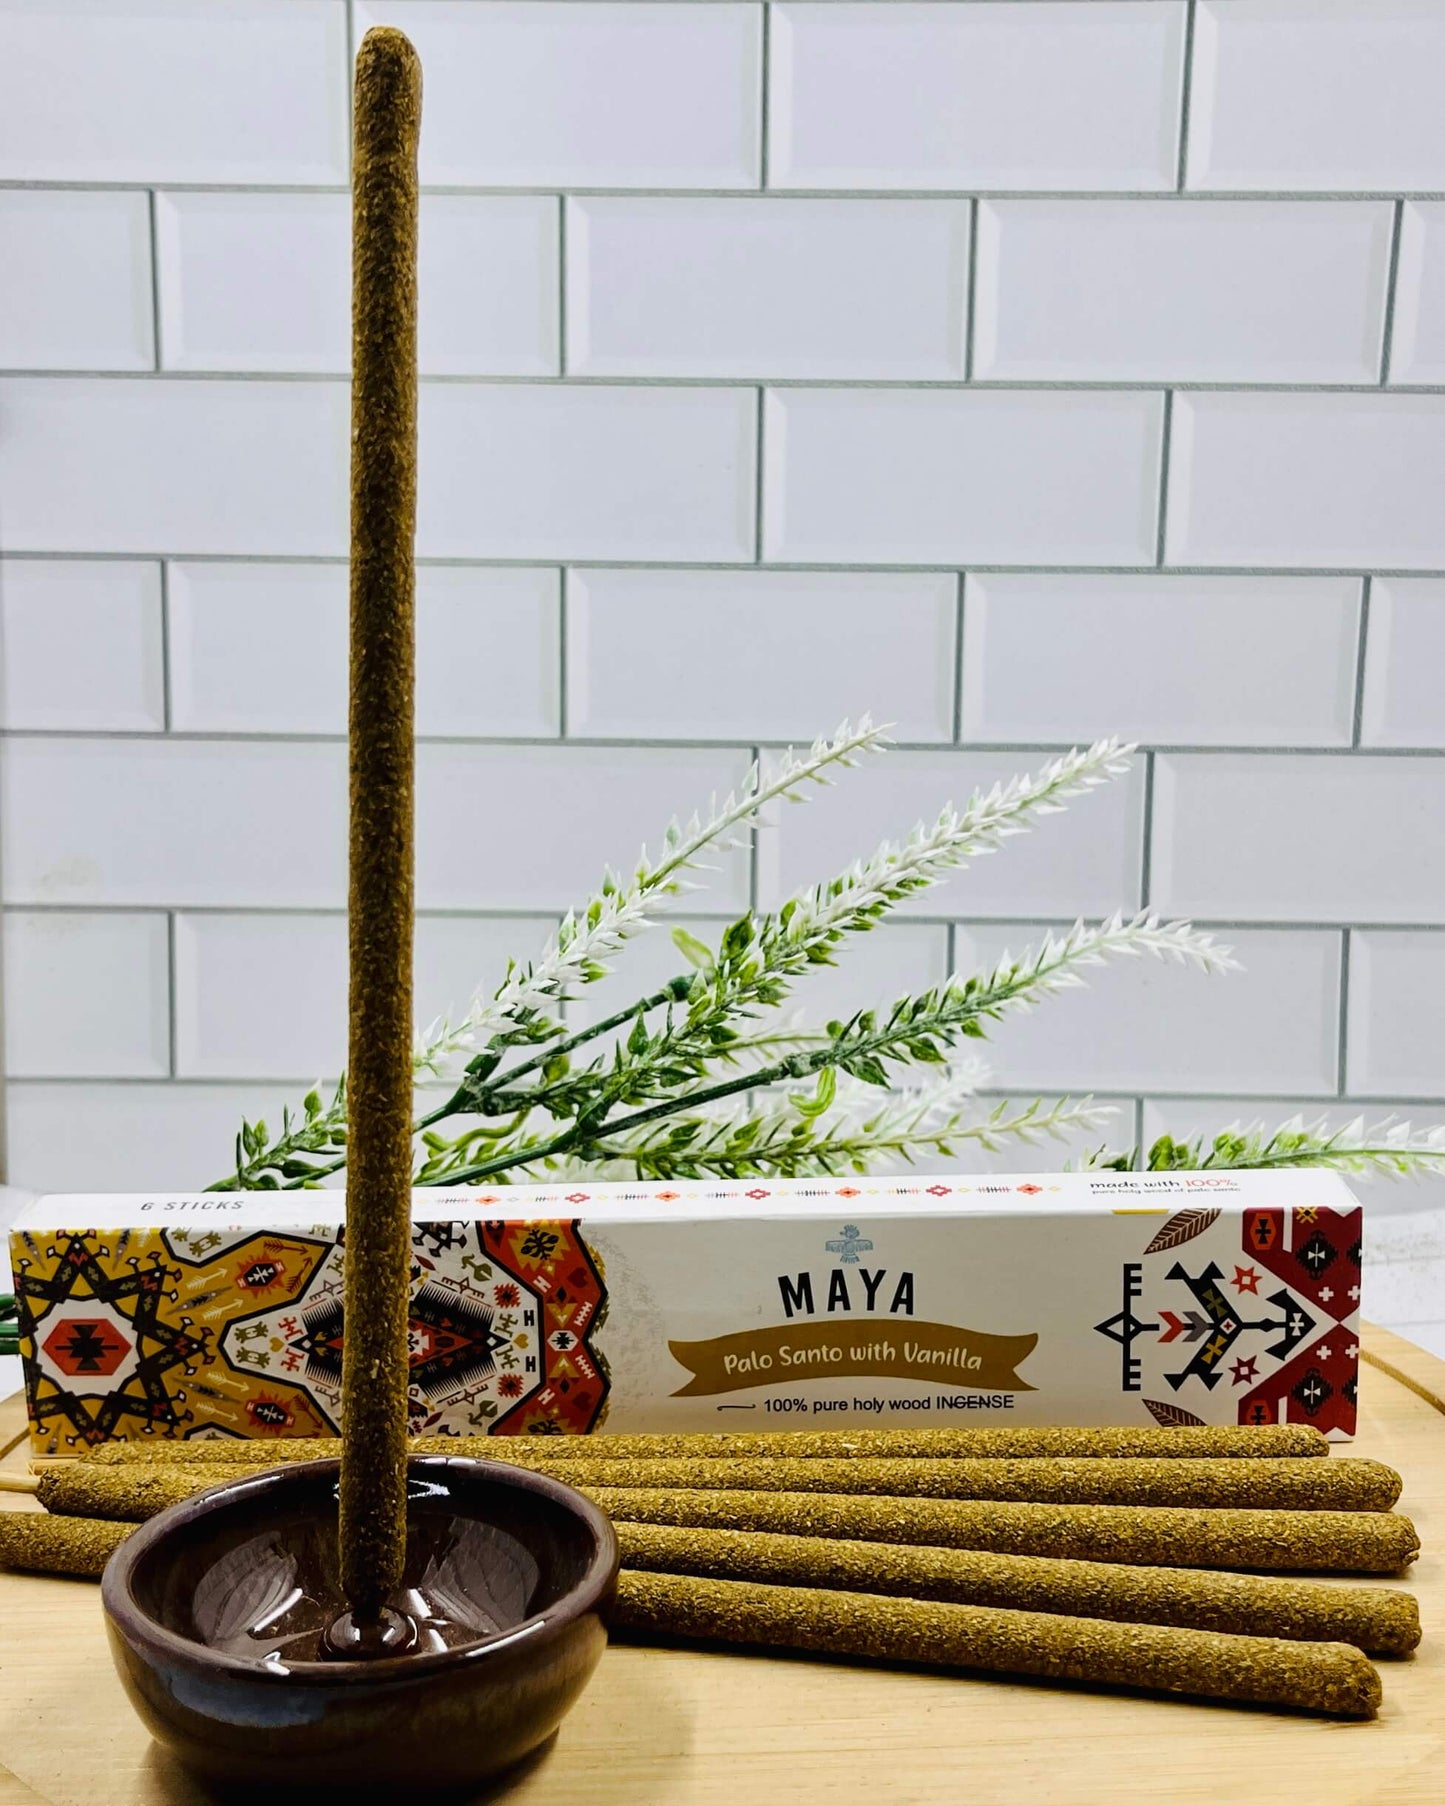 MAYA Palo Santo & Vanilla Incense